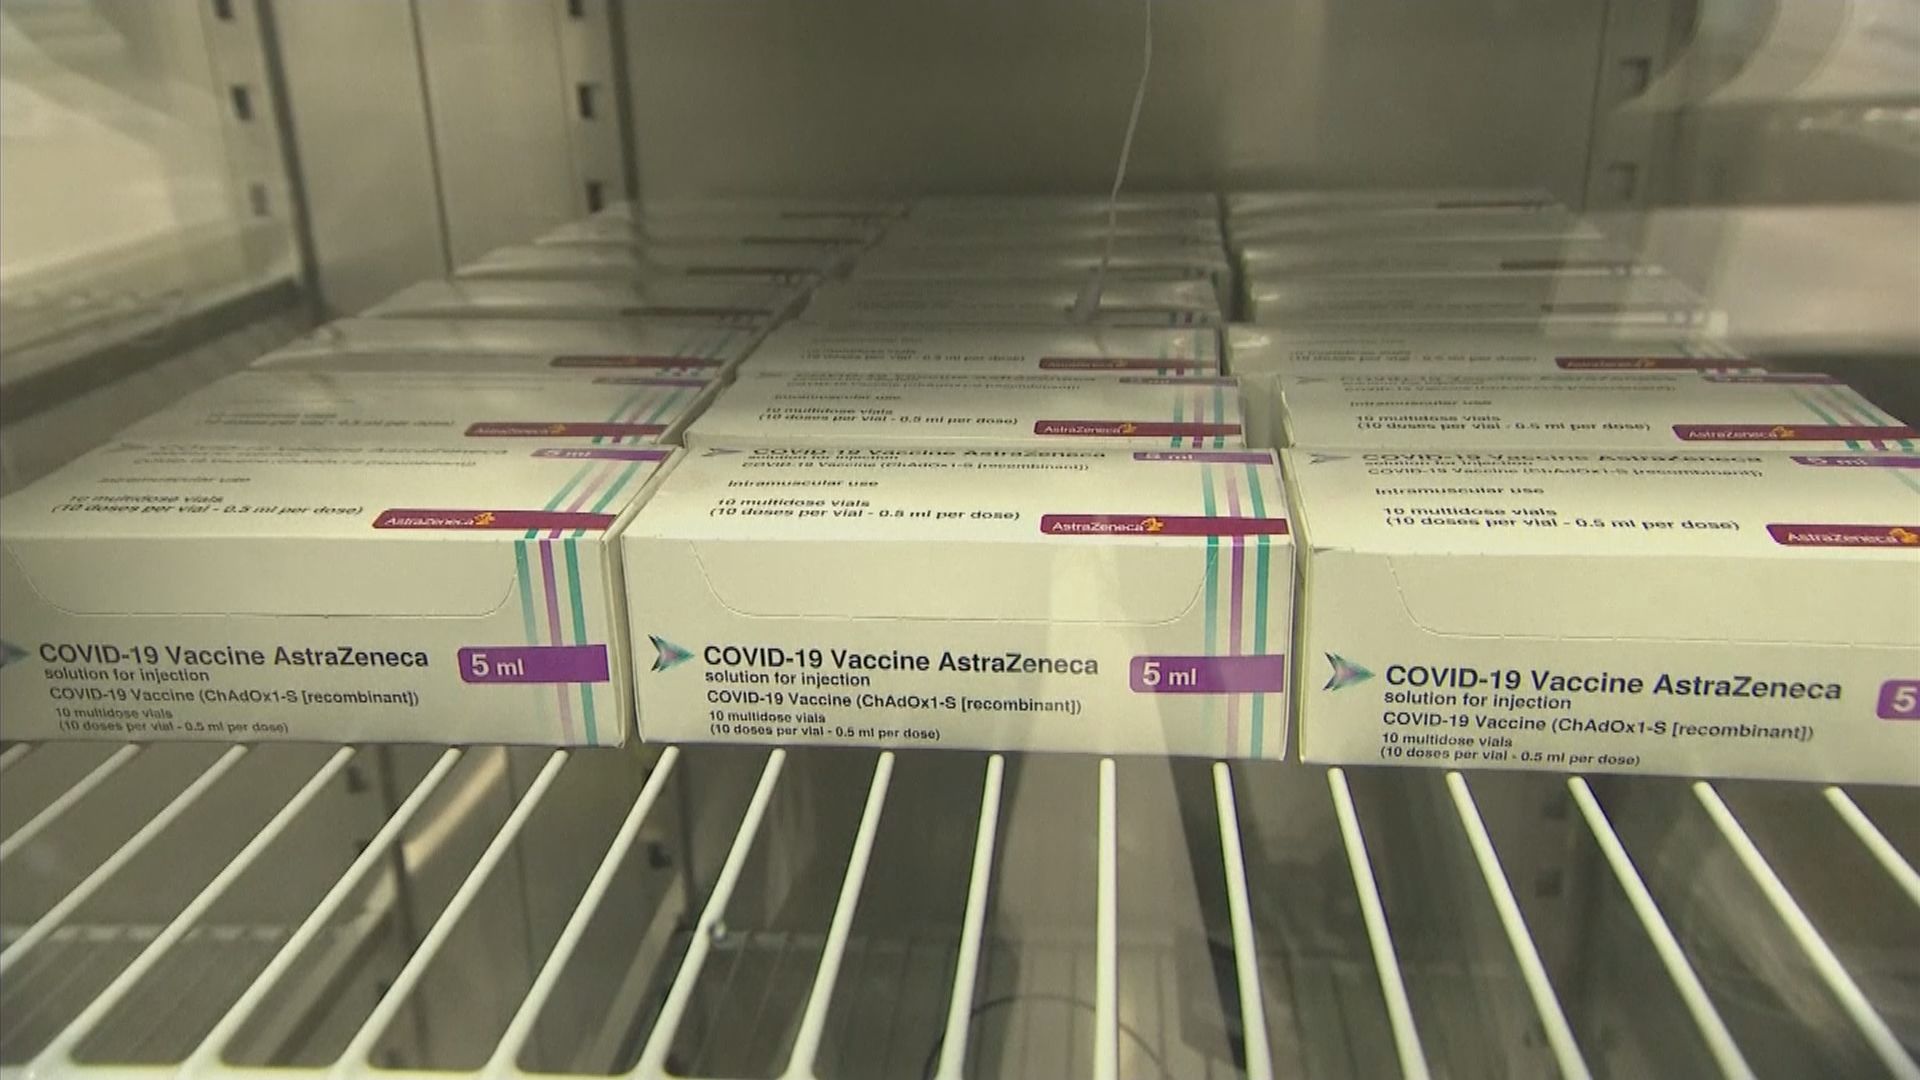 歐盟批阿斯利康減供應疫苗　將設機制監察疫苗出口